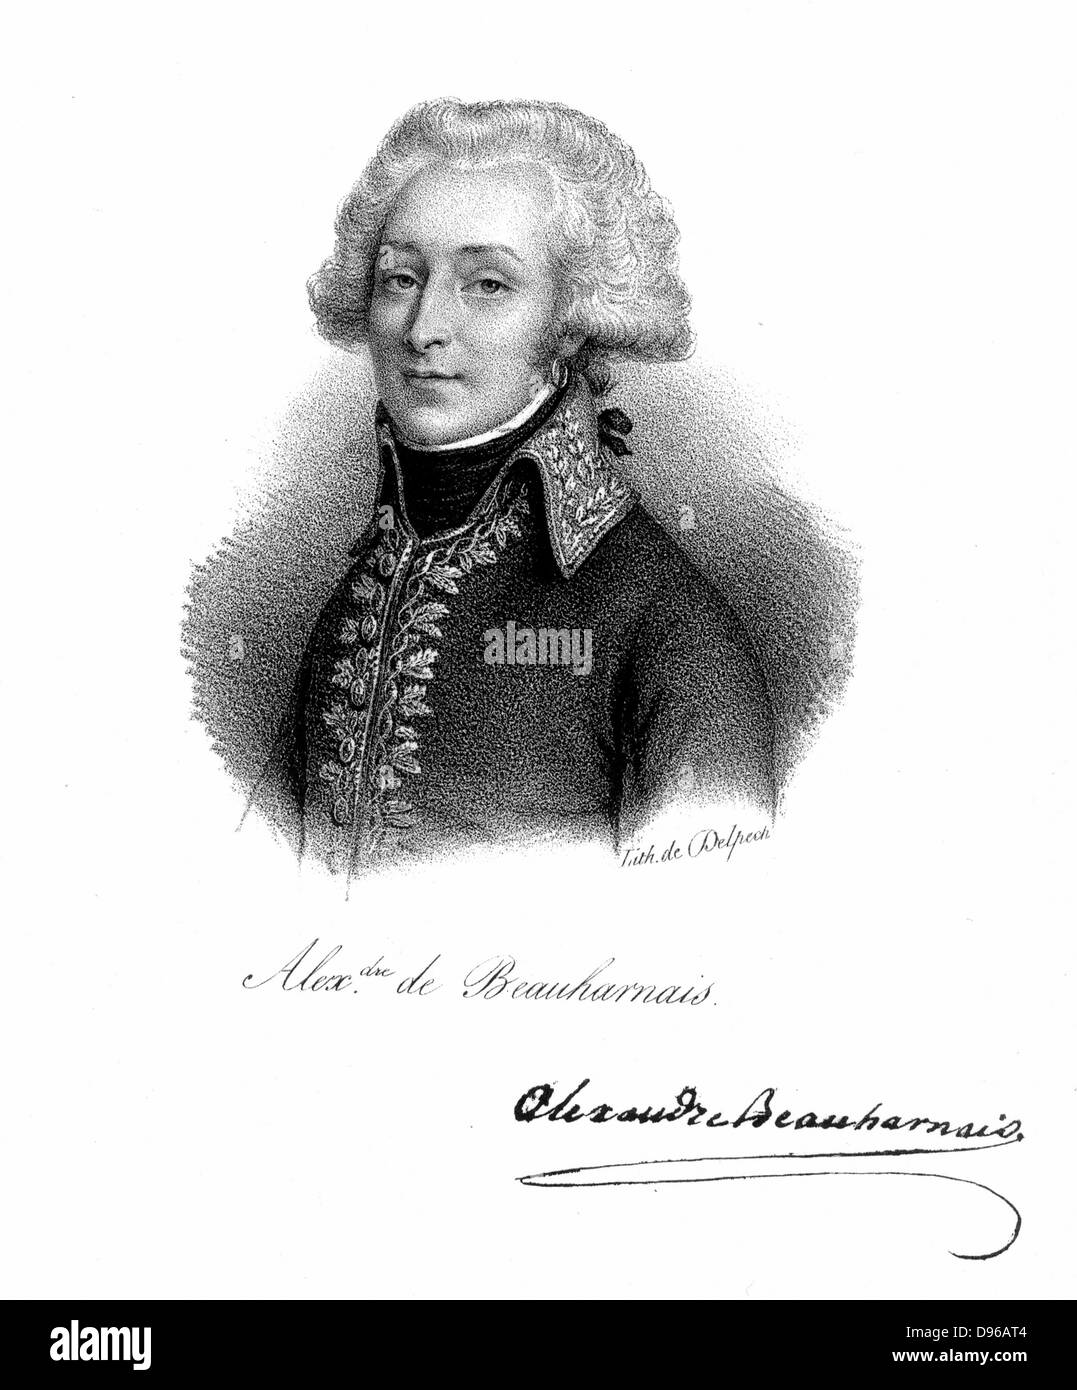 Alexandre, vicomte de Beauharnais (1760-1794) soldat français ; dans la révolution française il a été arrêté comme un 'suspect' ; guillotiné 1793 ; premier mari de l'Impératrice Joséphine, épouse de Napoléon I. Lithographie Banque D'Images